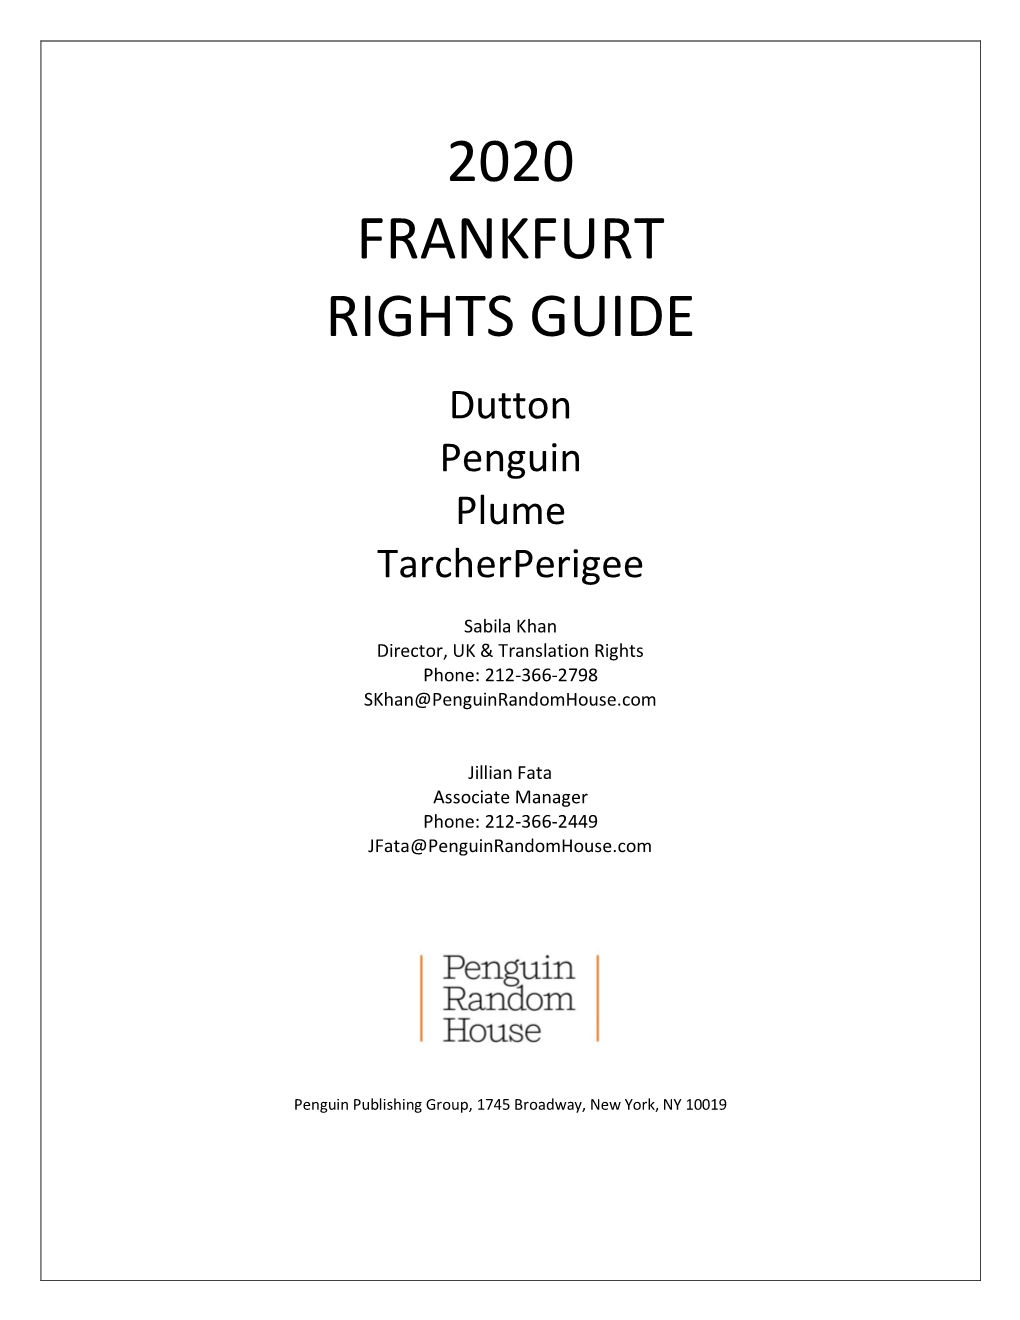 2020 Frankfurt Rights Guide